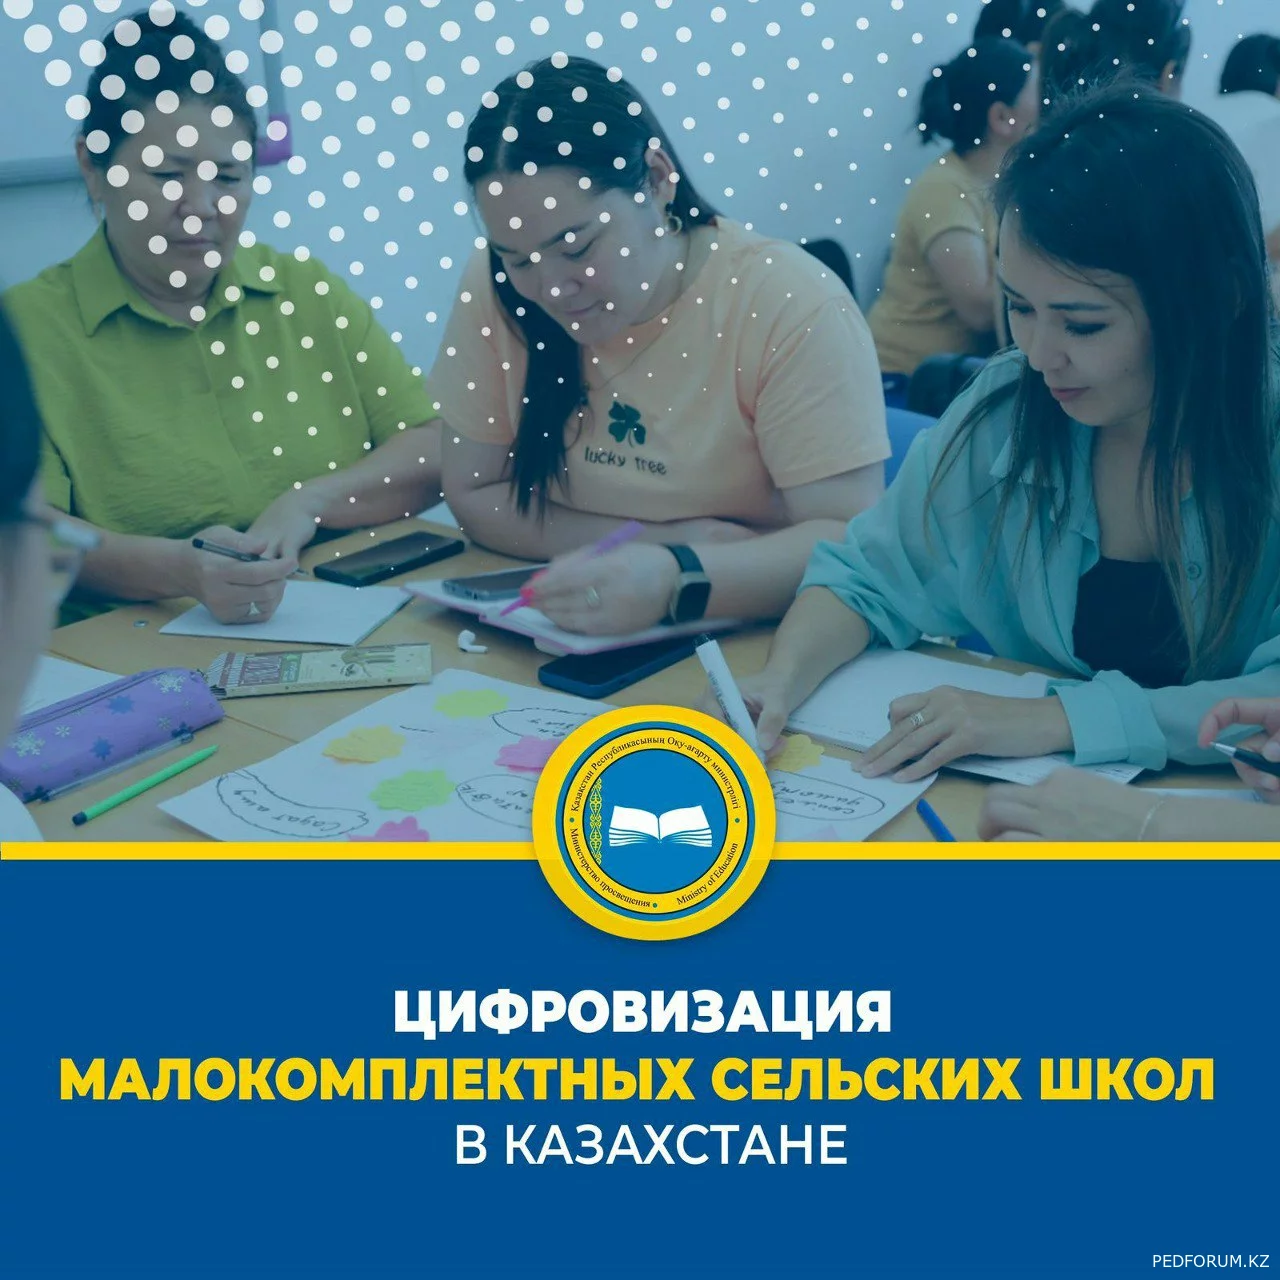 Цифровизация малокомплектных сельских школ в Казахстане